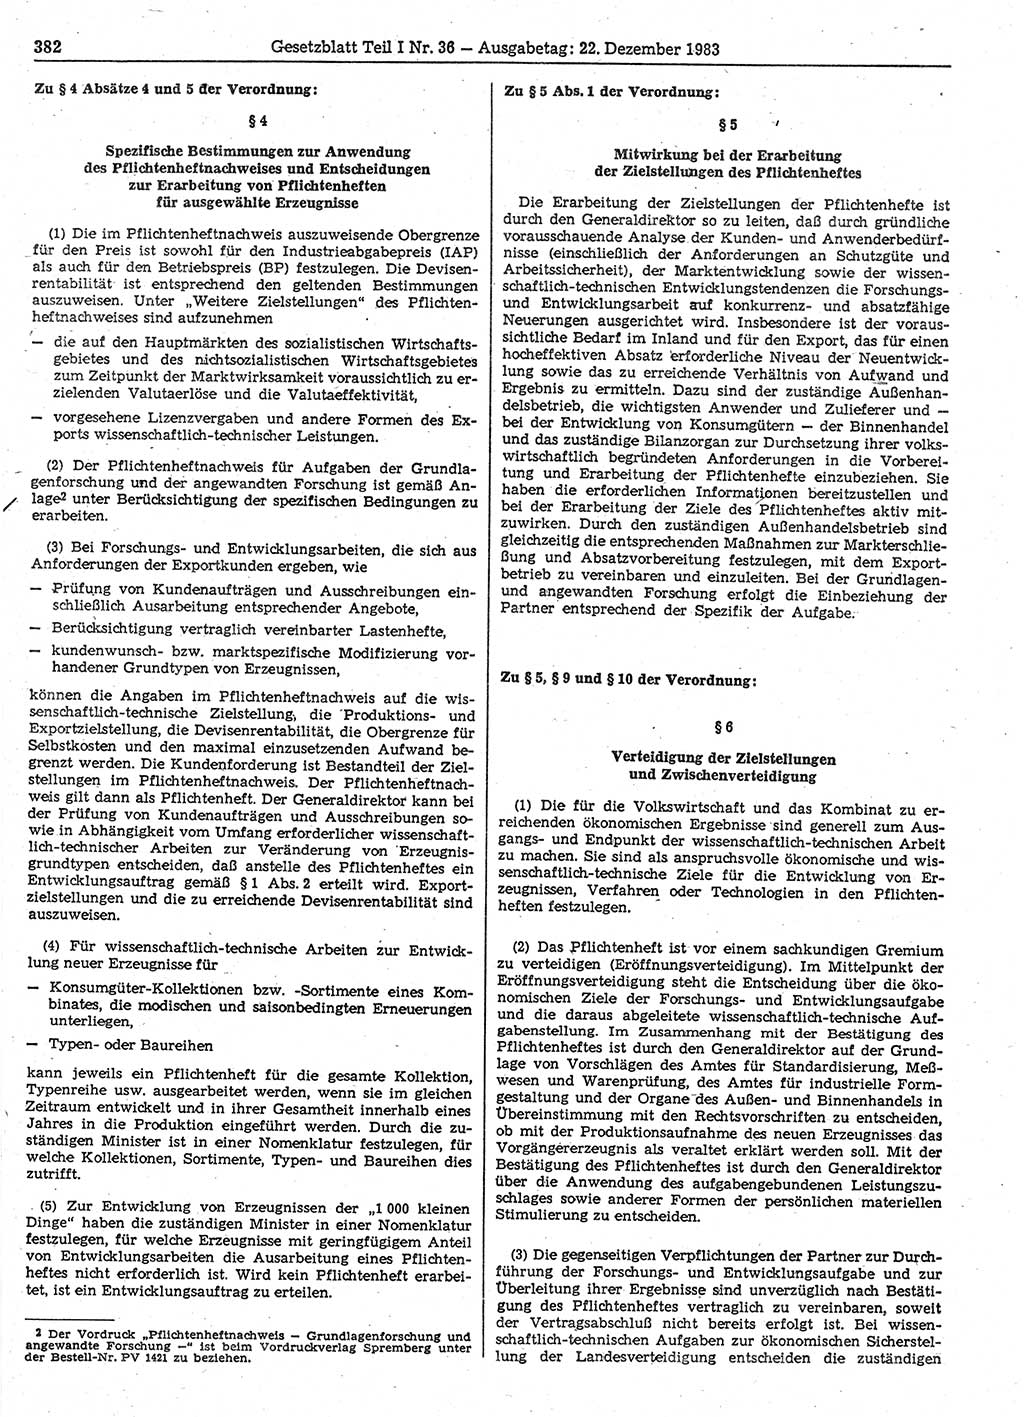 Gesetzblatt (GBl.) der Deutschen Demokratischen Republik (DDR) Teil Ⅰ 1983, Seite 382 (GBl. DDR Ⅰ 1983, S. 382)